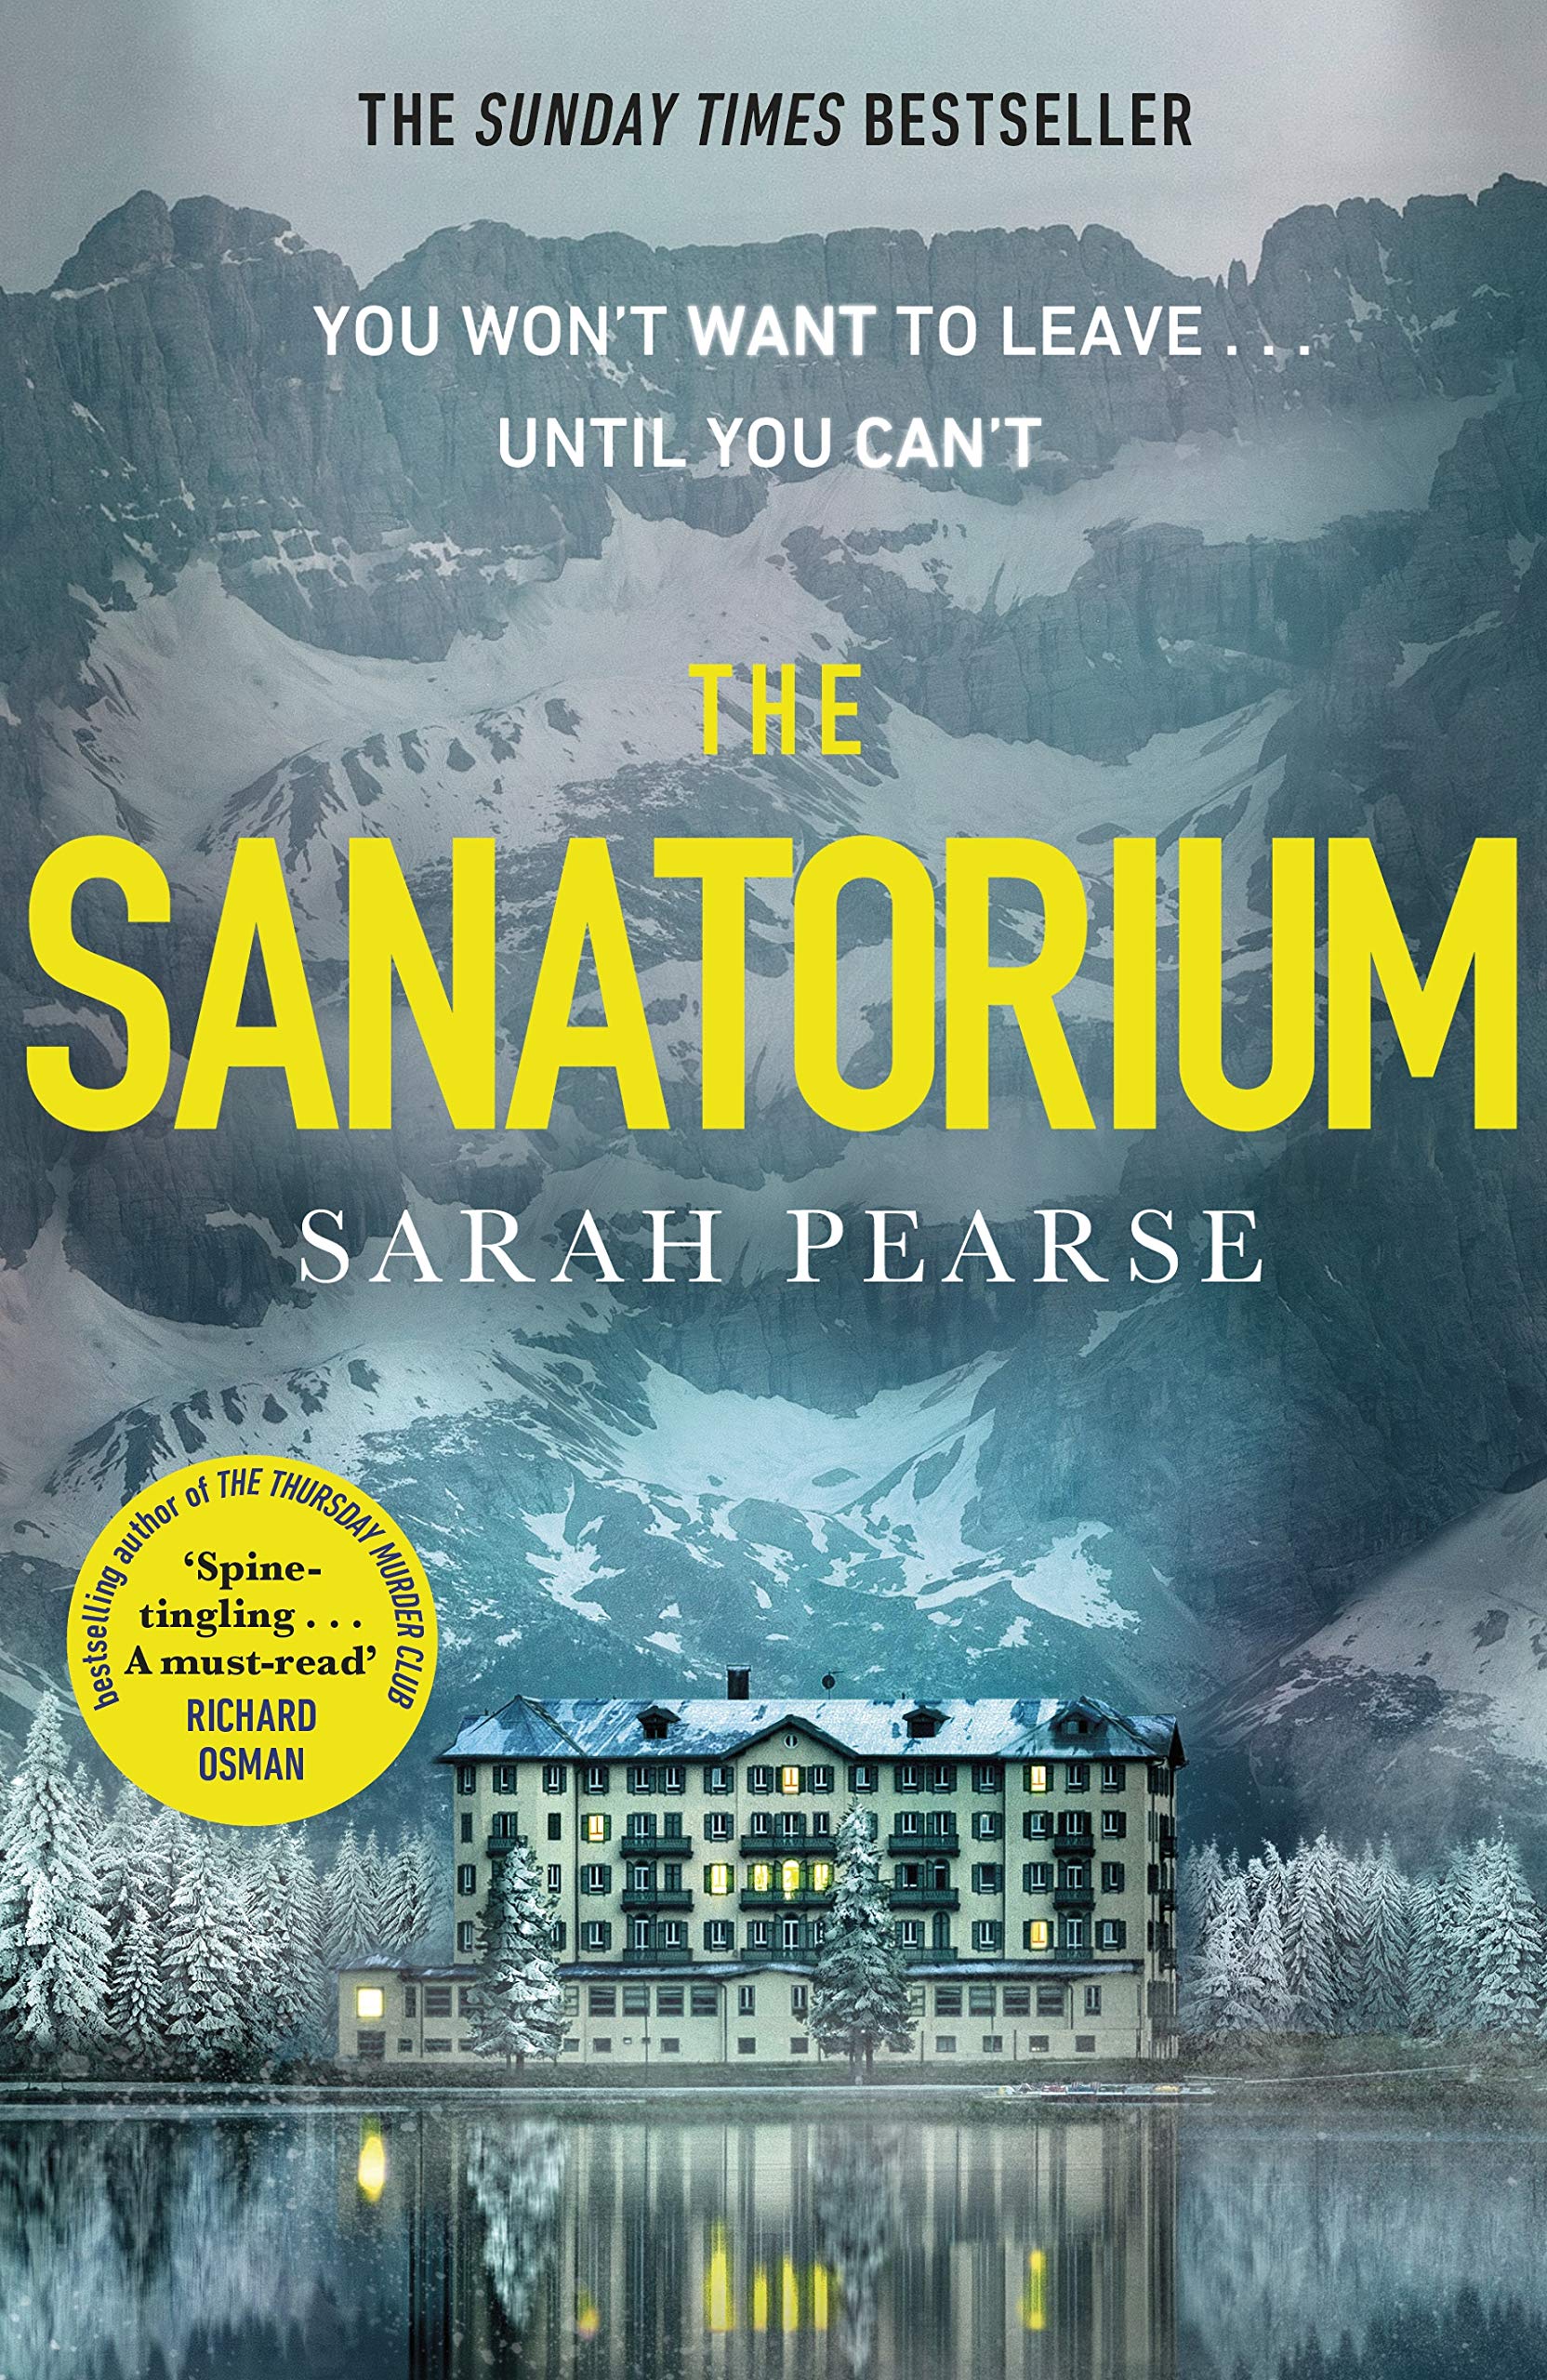 The Sanatorium by Sarah Pearse